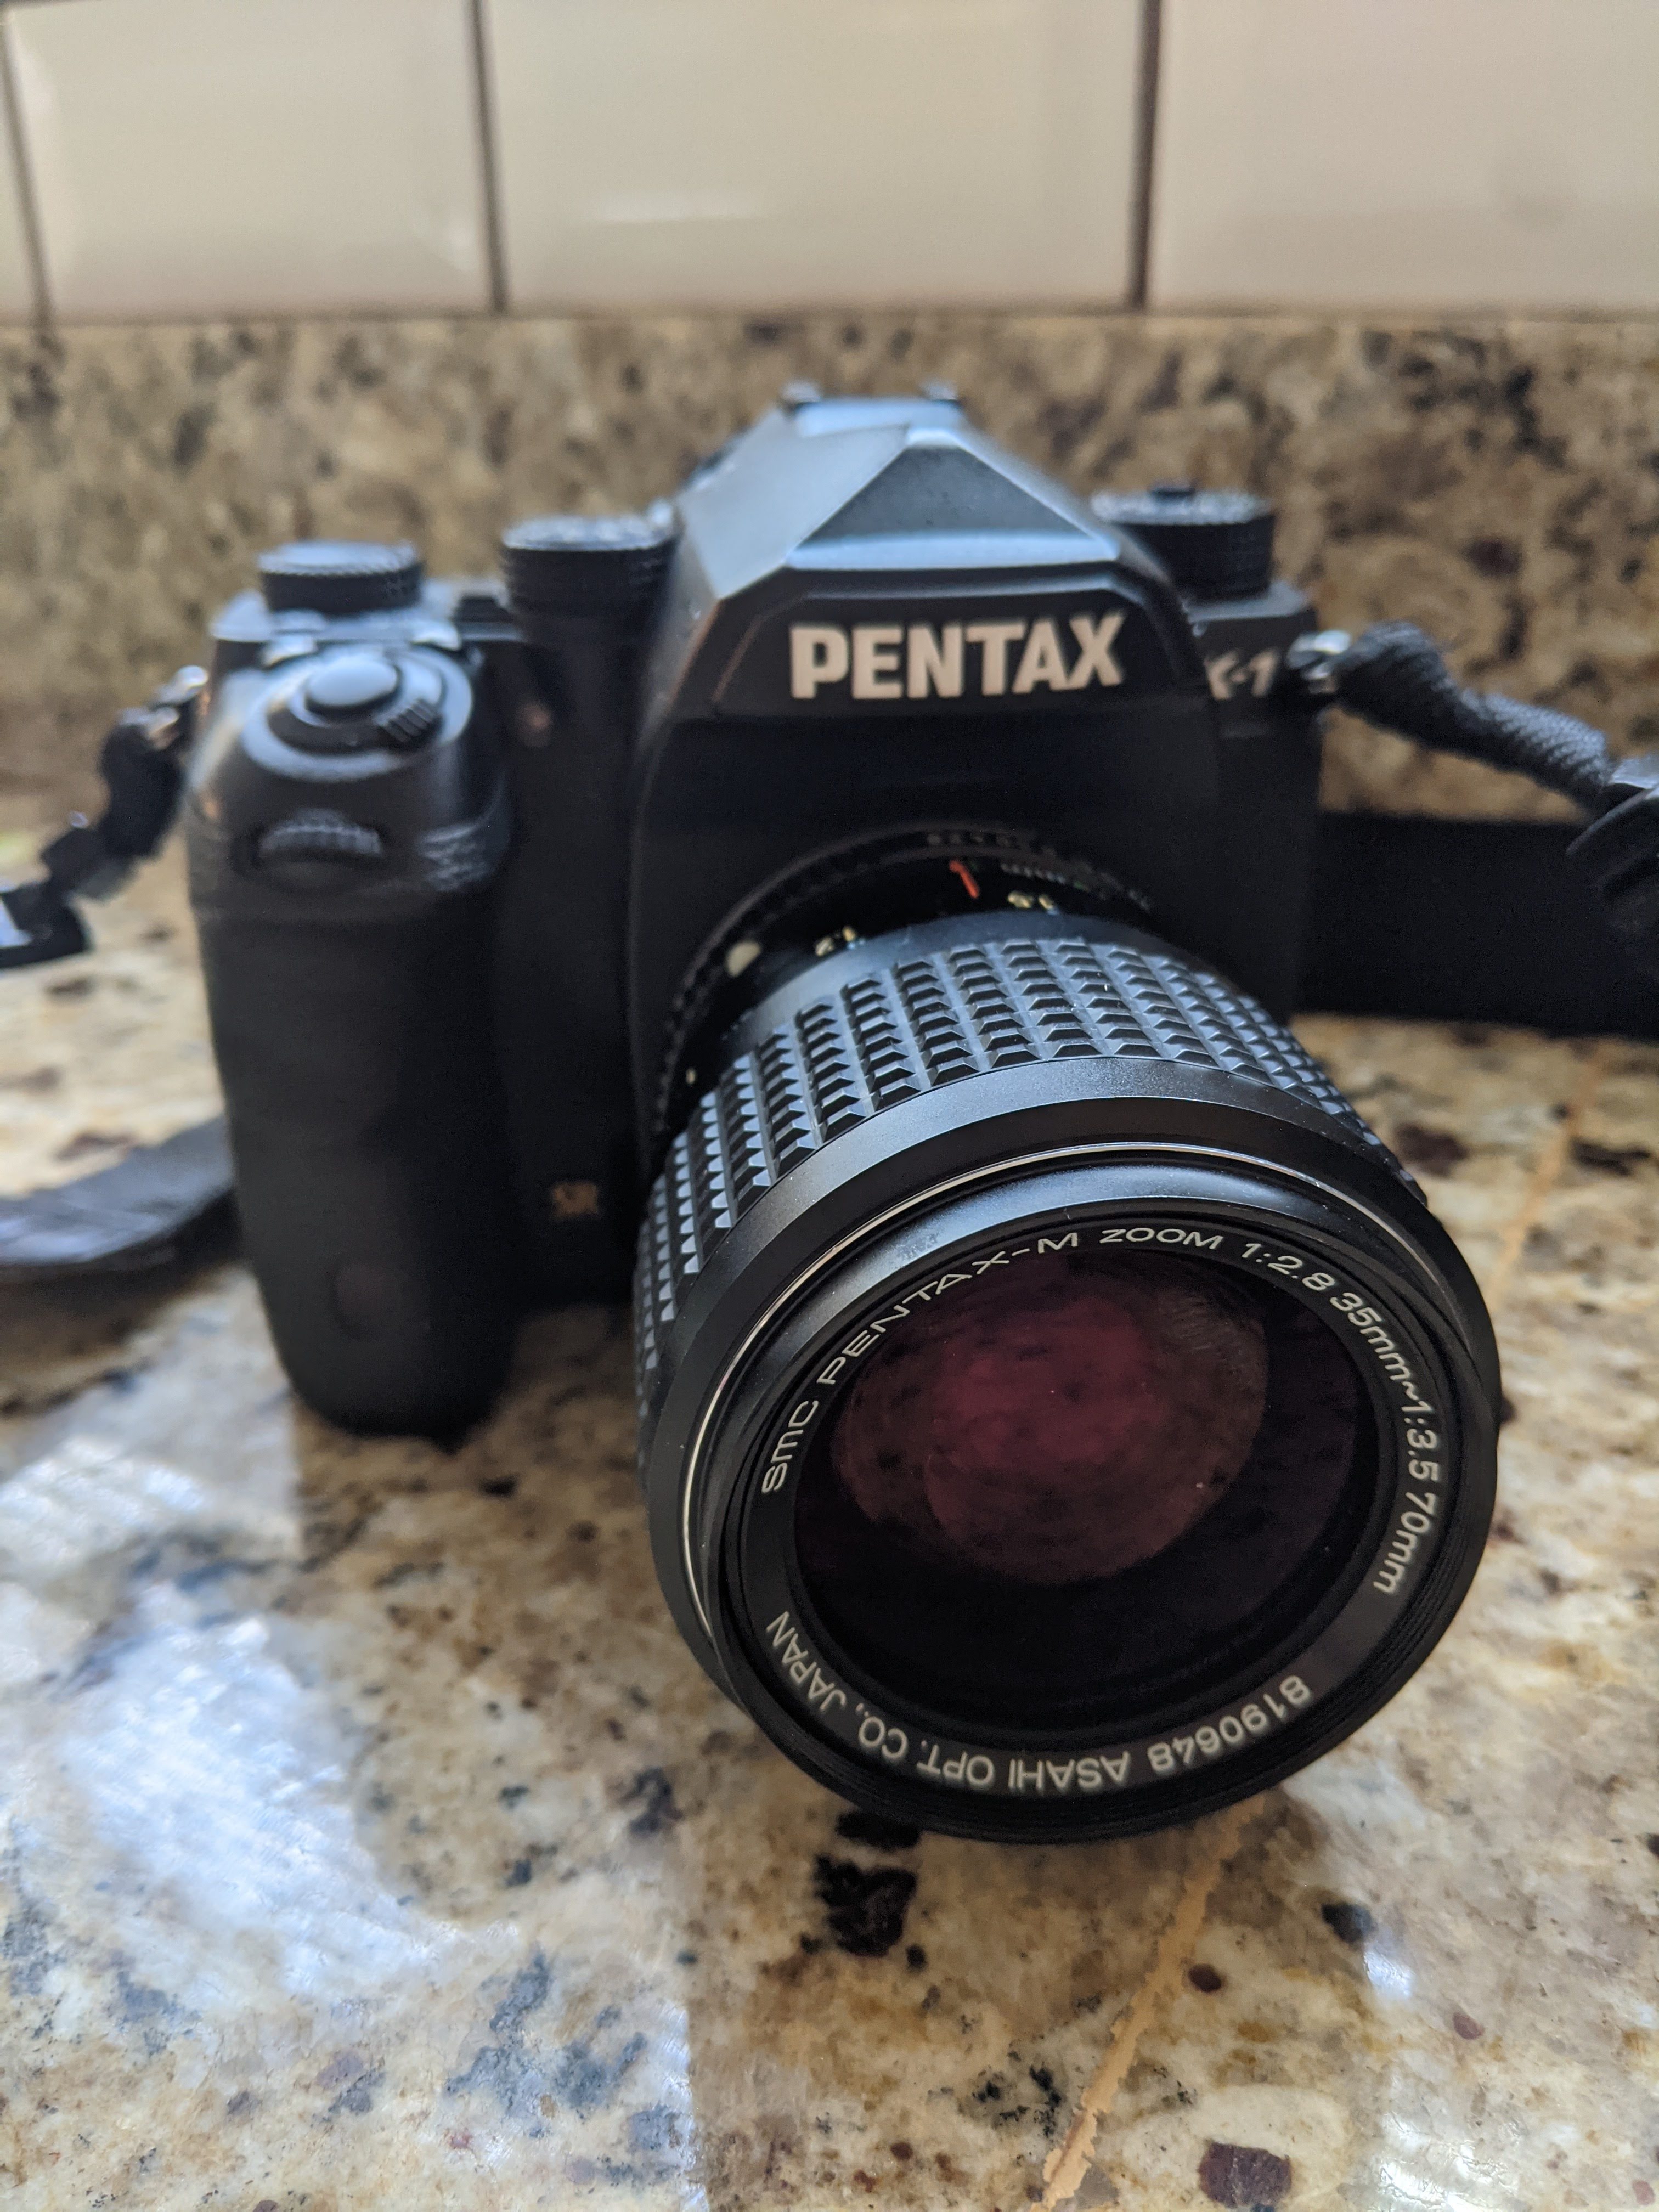 Pentax-M 35-70mm F2.8-3.5 lens mounted to Pentax K-1